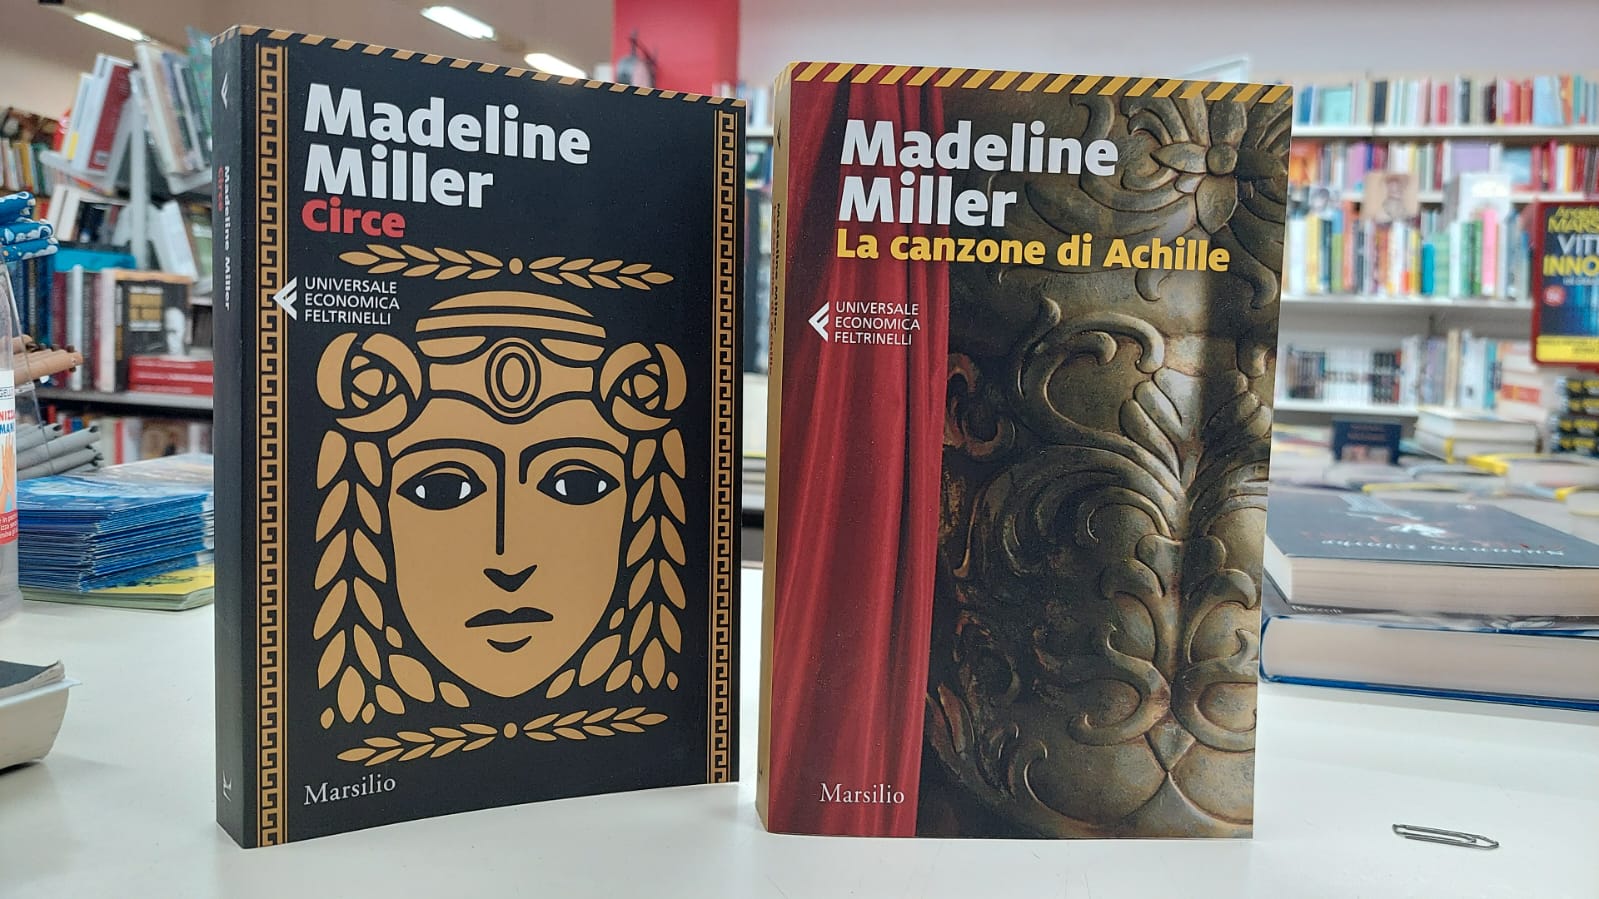 Circe e Achille come non li avete mai visti: la mitologia greca raccontata da Madeline Miller